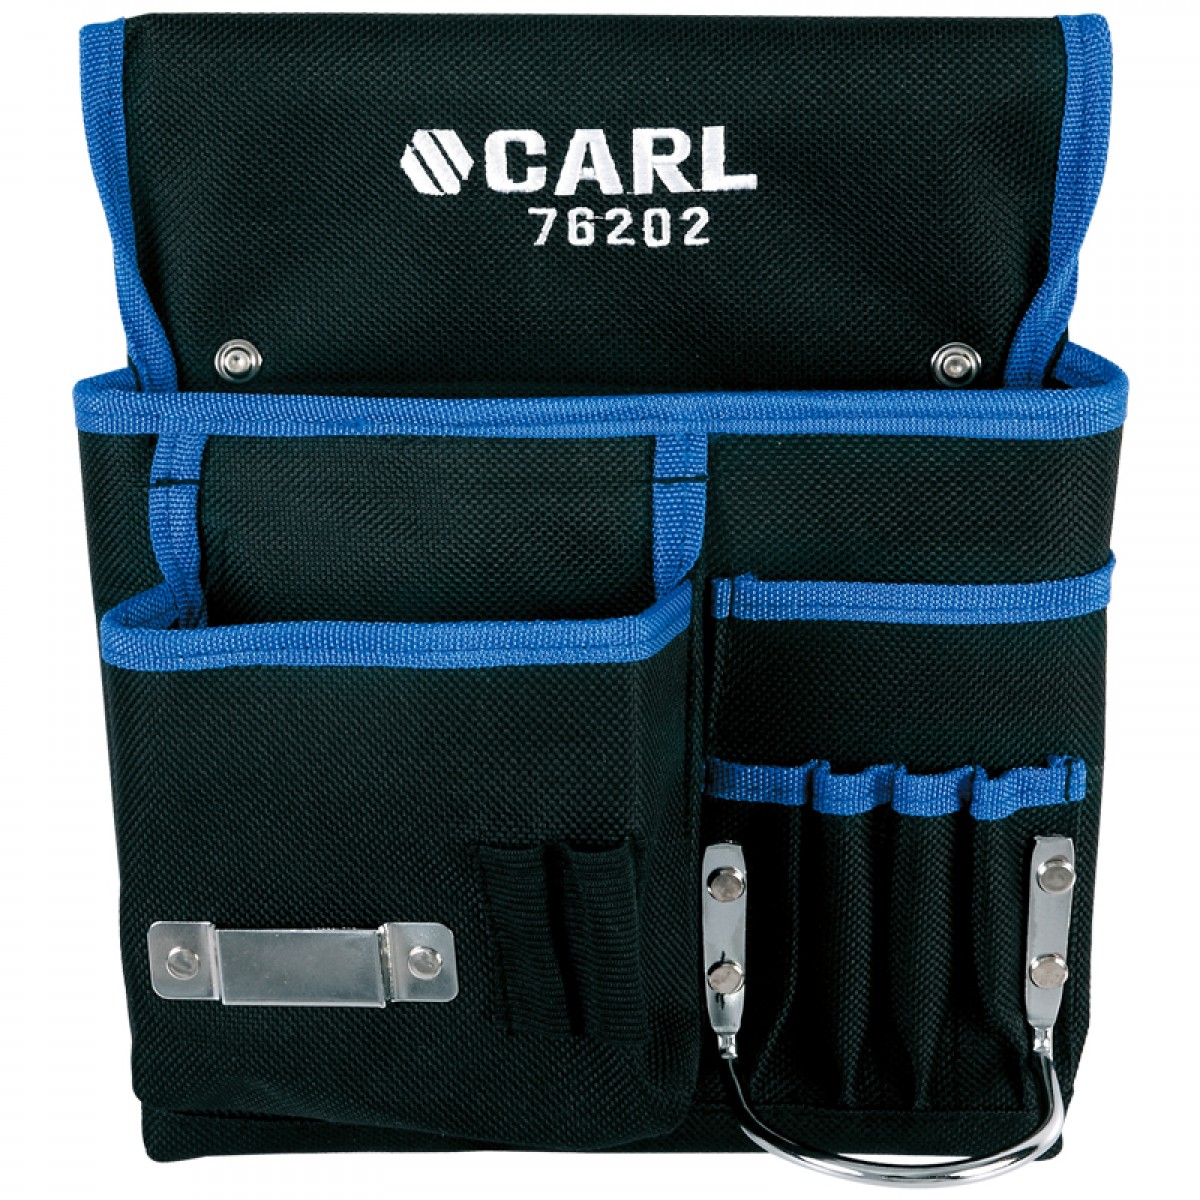 卡尔 76202 6袋式组合工具腰包